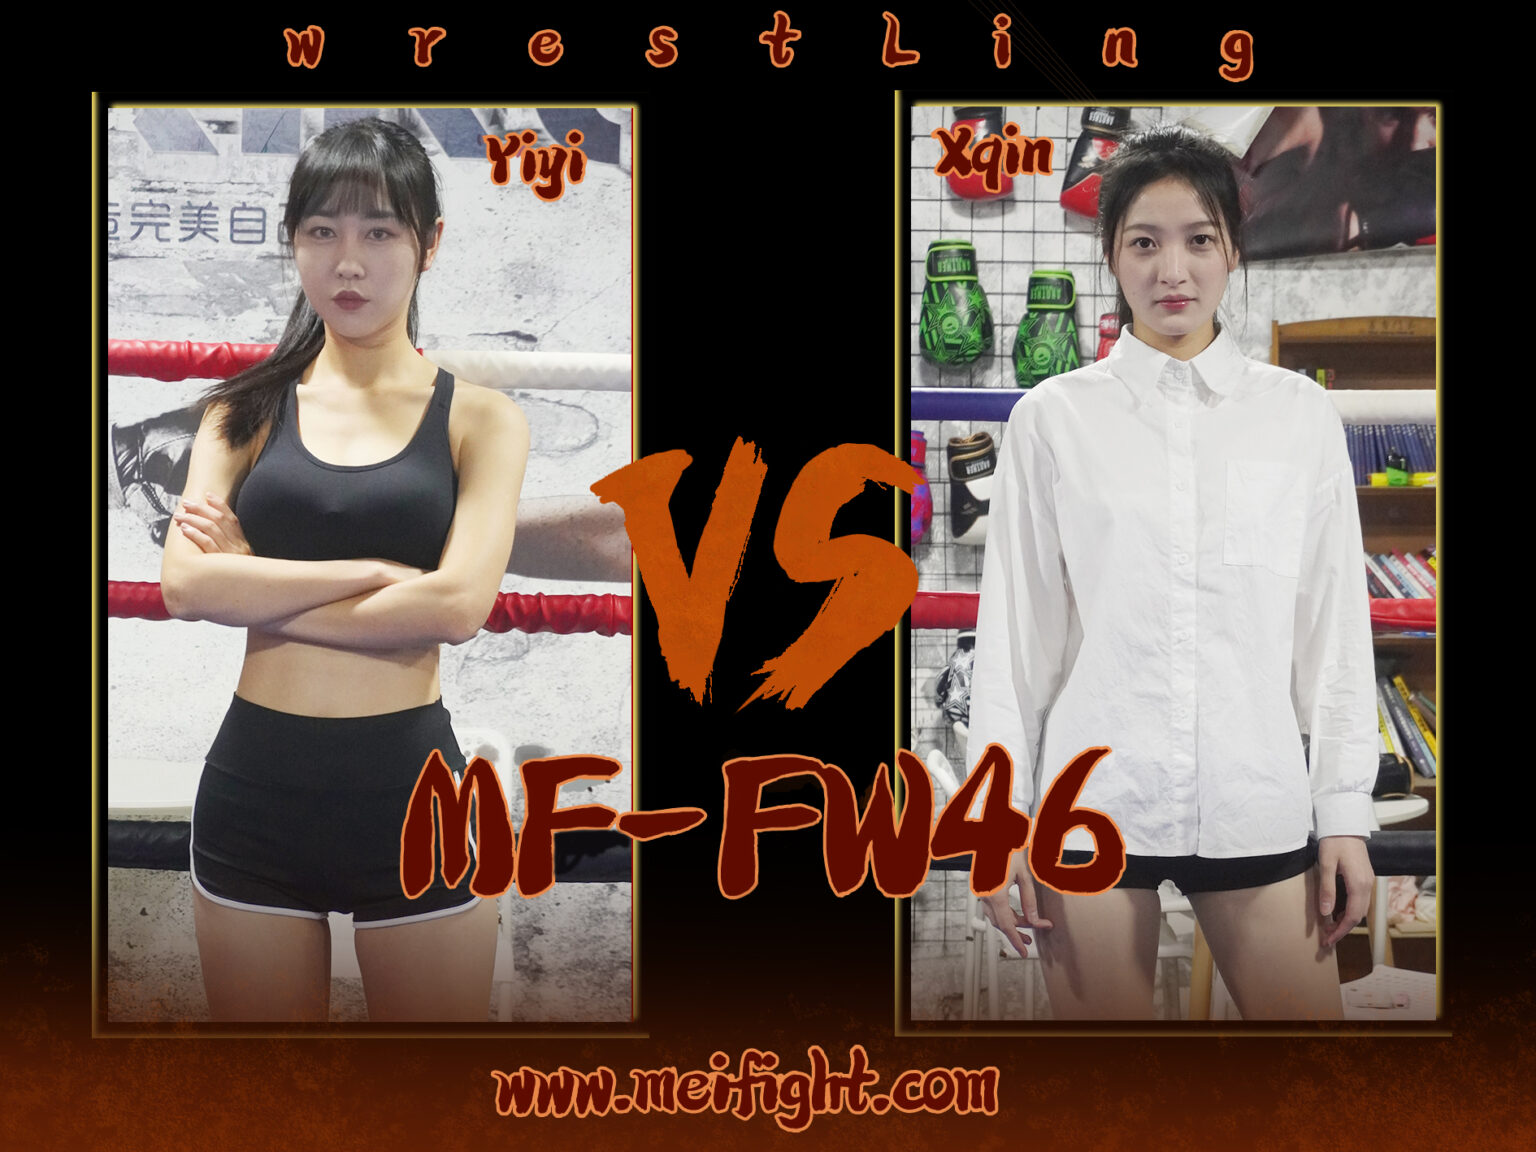 MF-FW46-Yiyi VS Xqin